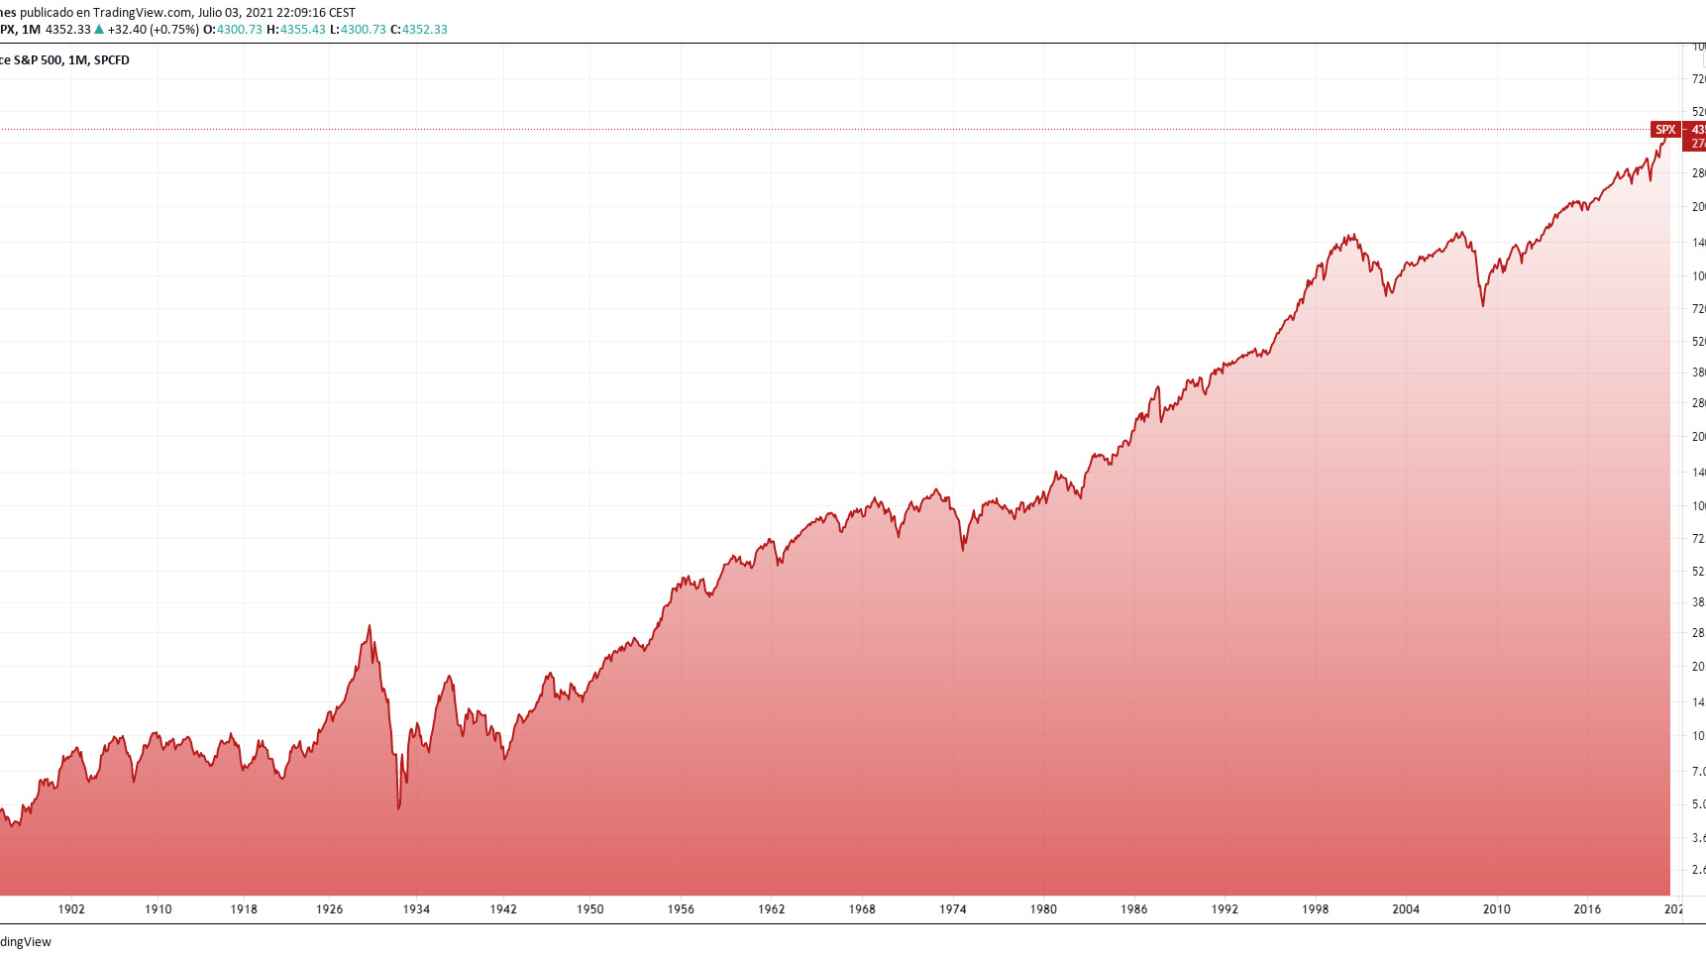 Gráfico del S&P 500 de largo plazo